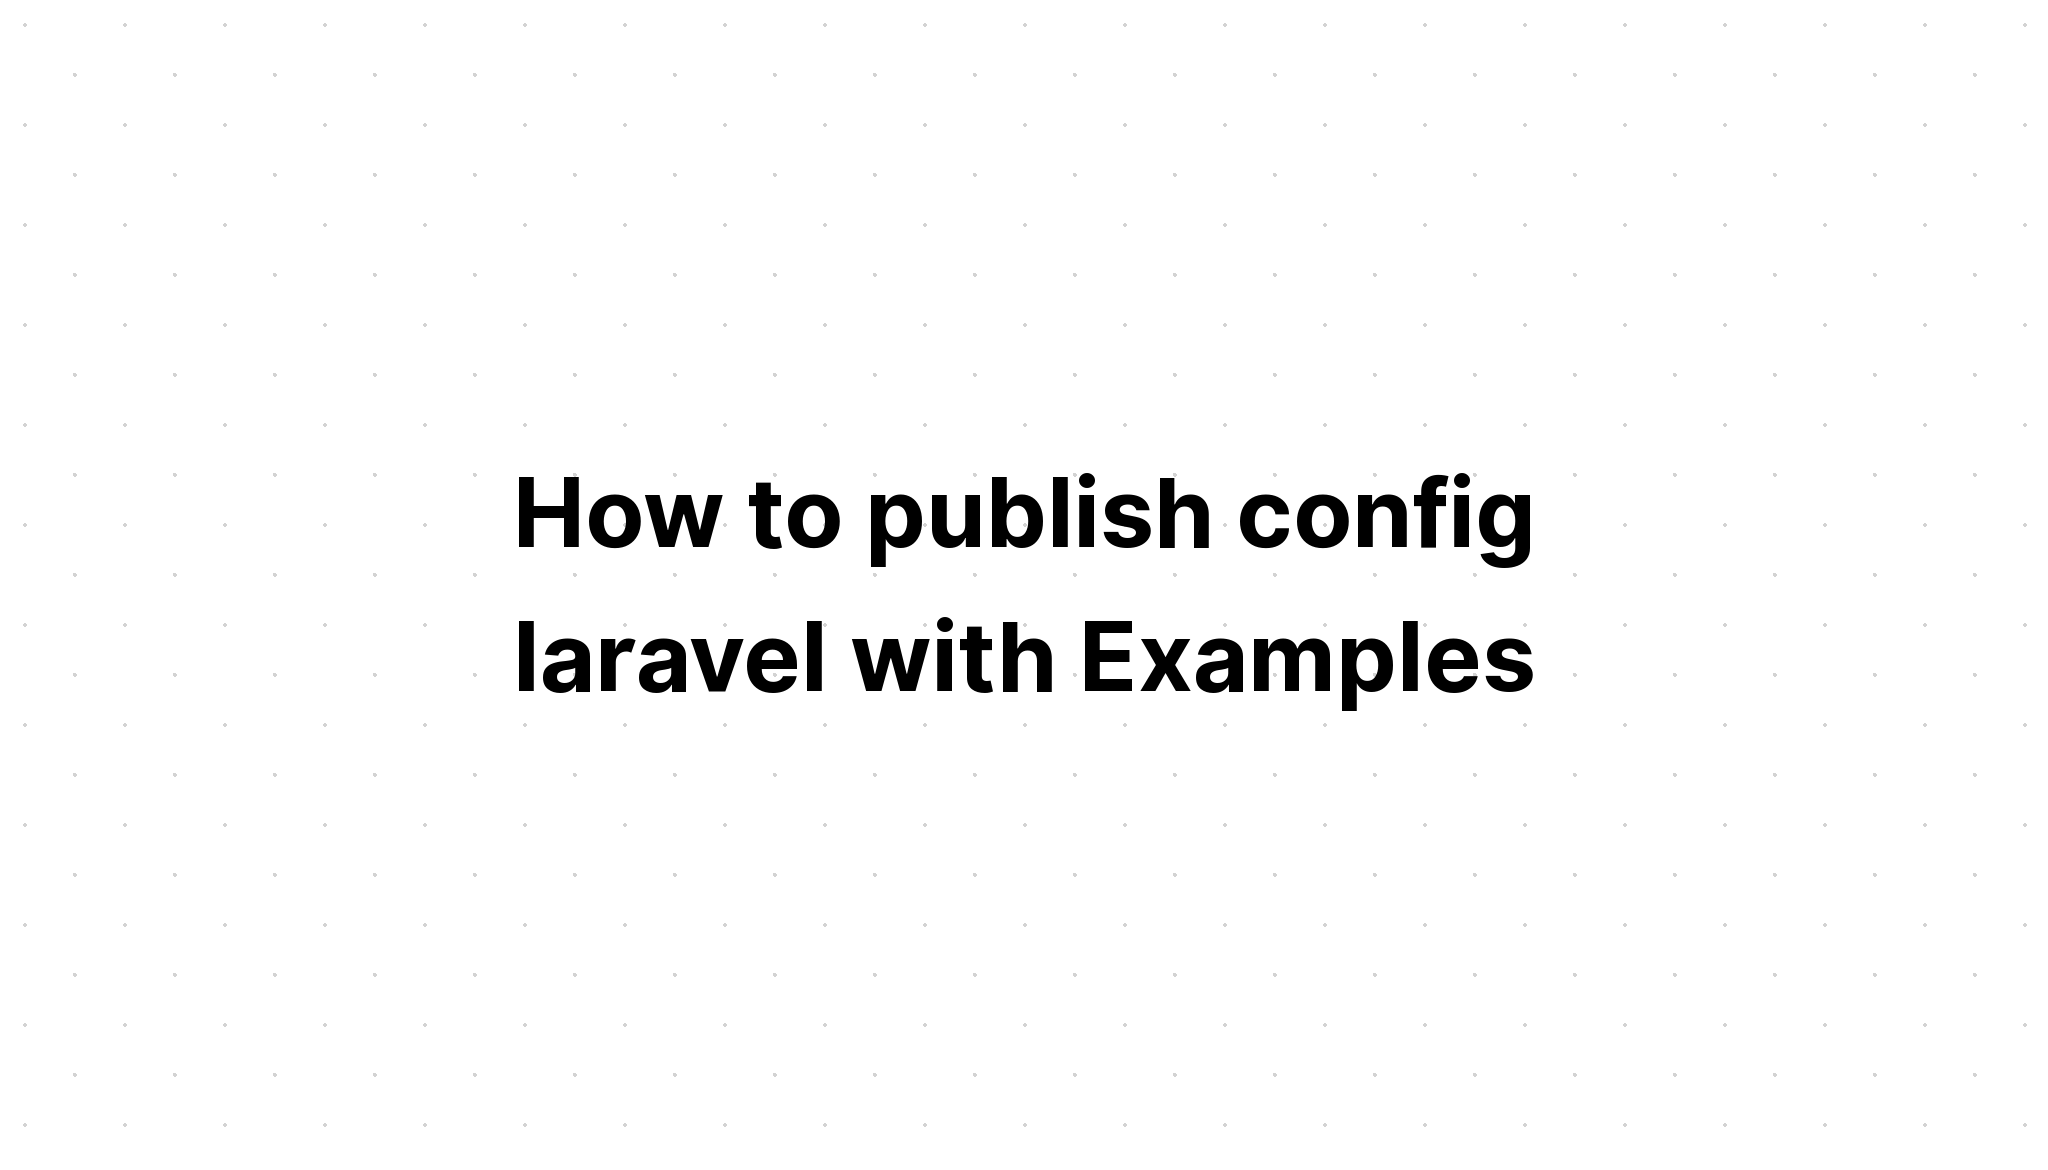 Cách xuất bản cấu hình laravel với các ví dụ